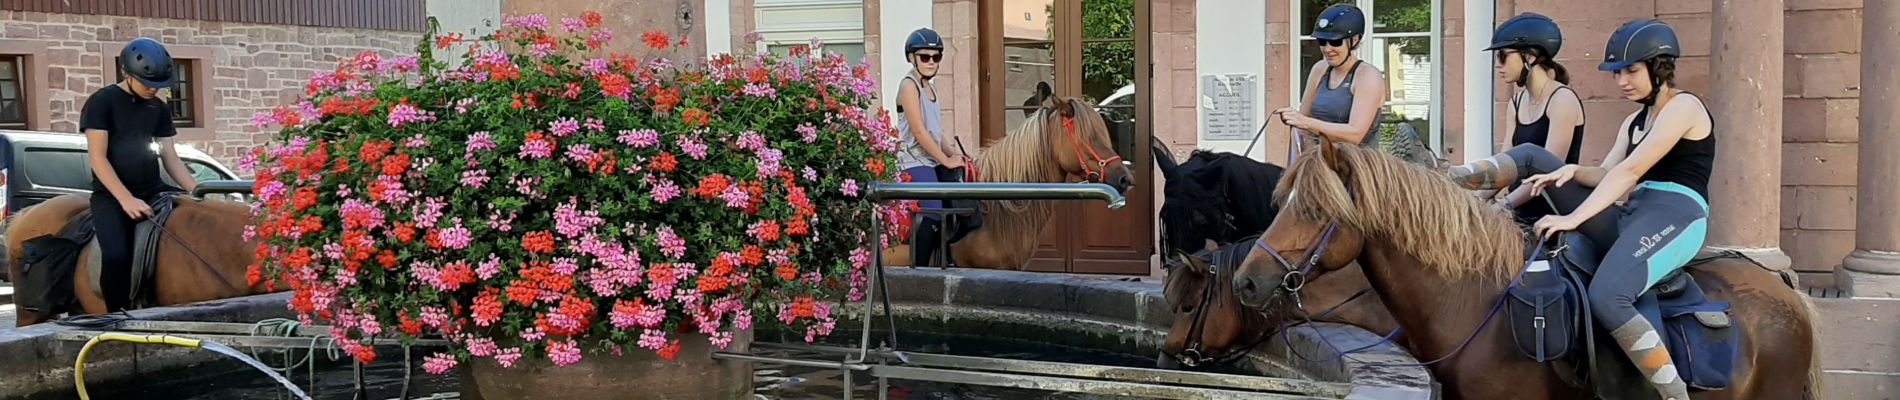 Percorso Equitazione Bergheim - Ribeauvillé-Orbey - Photo